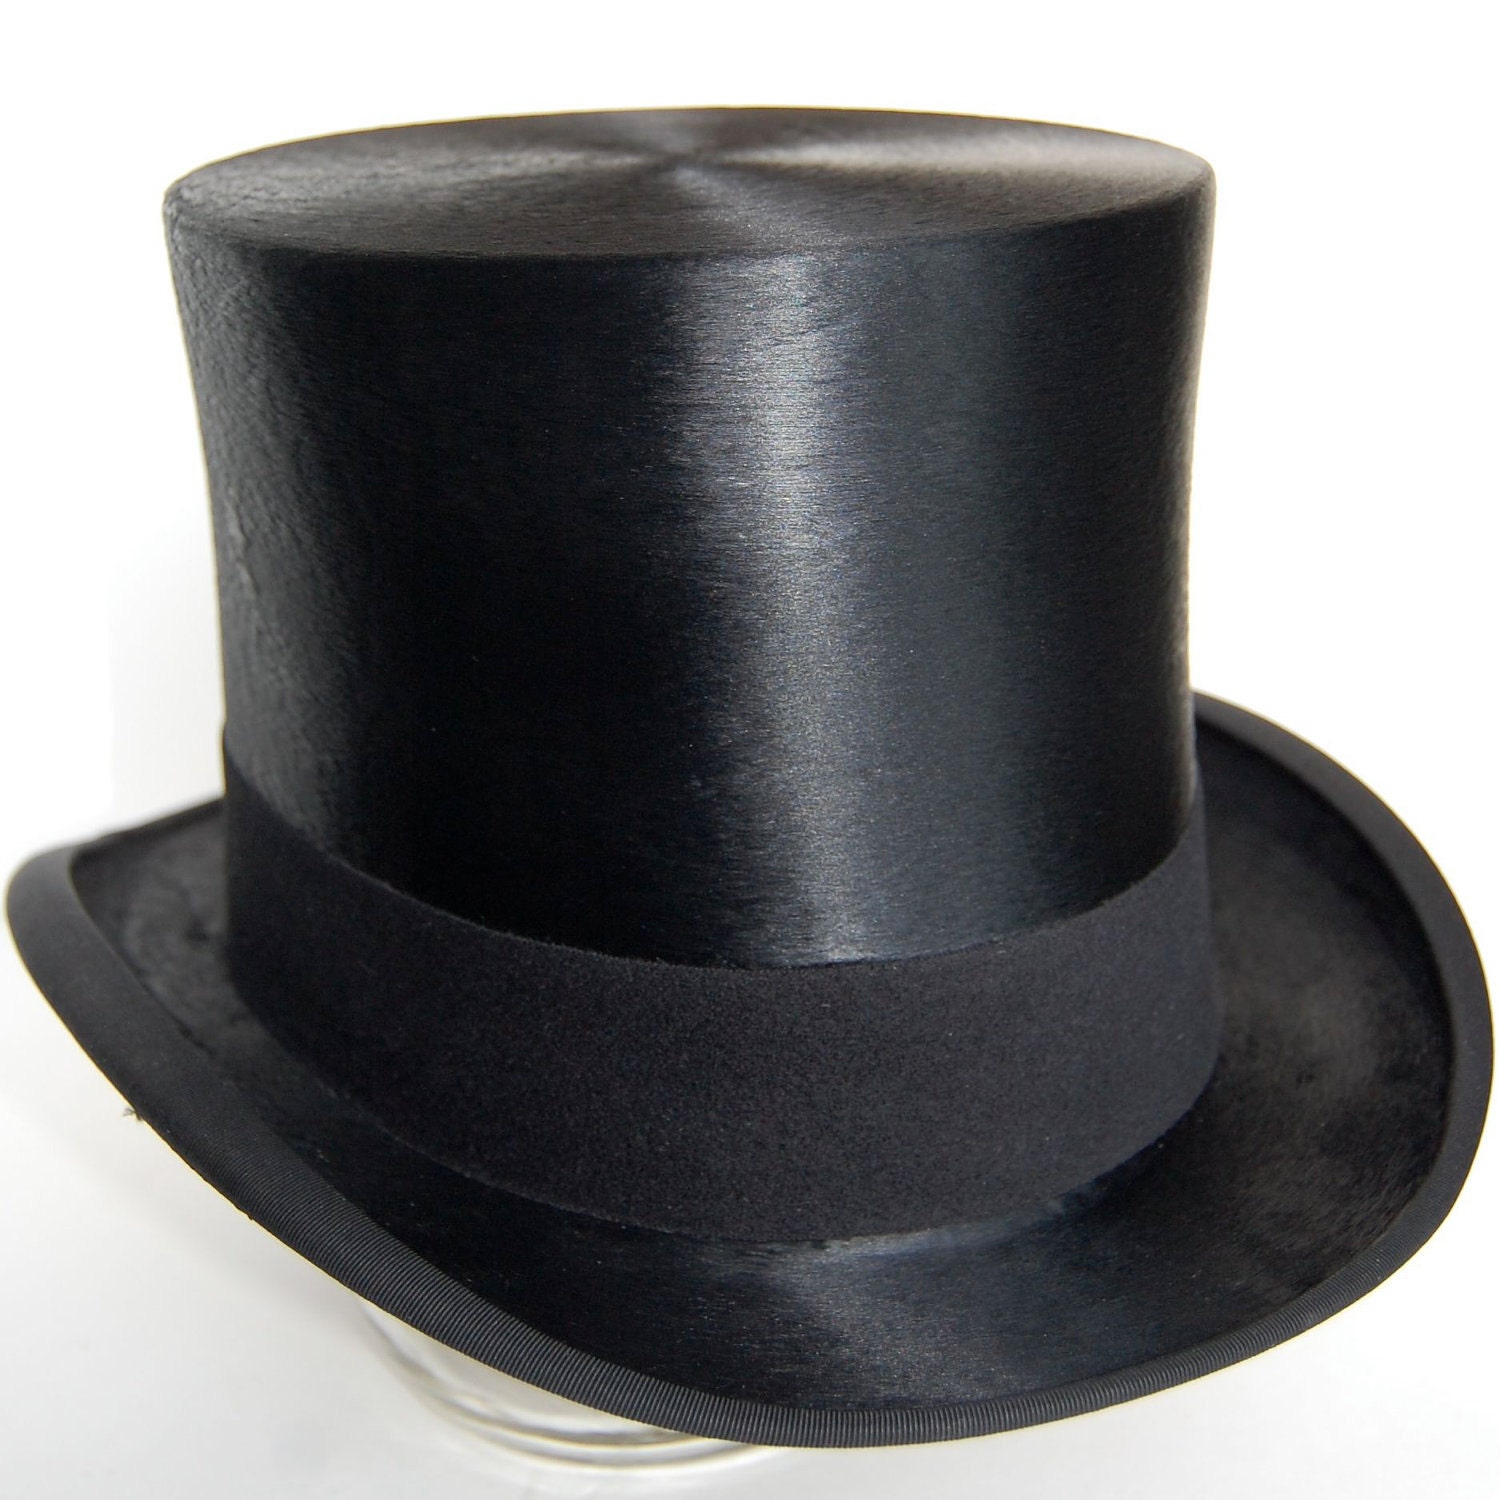 В цилиндре и шелковой накидке. Боливар шляпа 19 век. Боливар шляпа Пушкин. Цилиндр, Боливар.